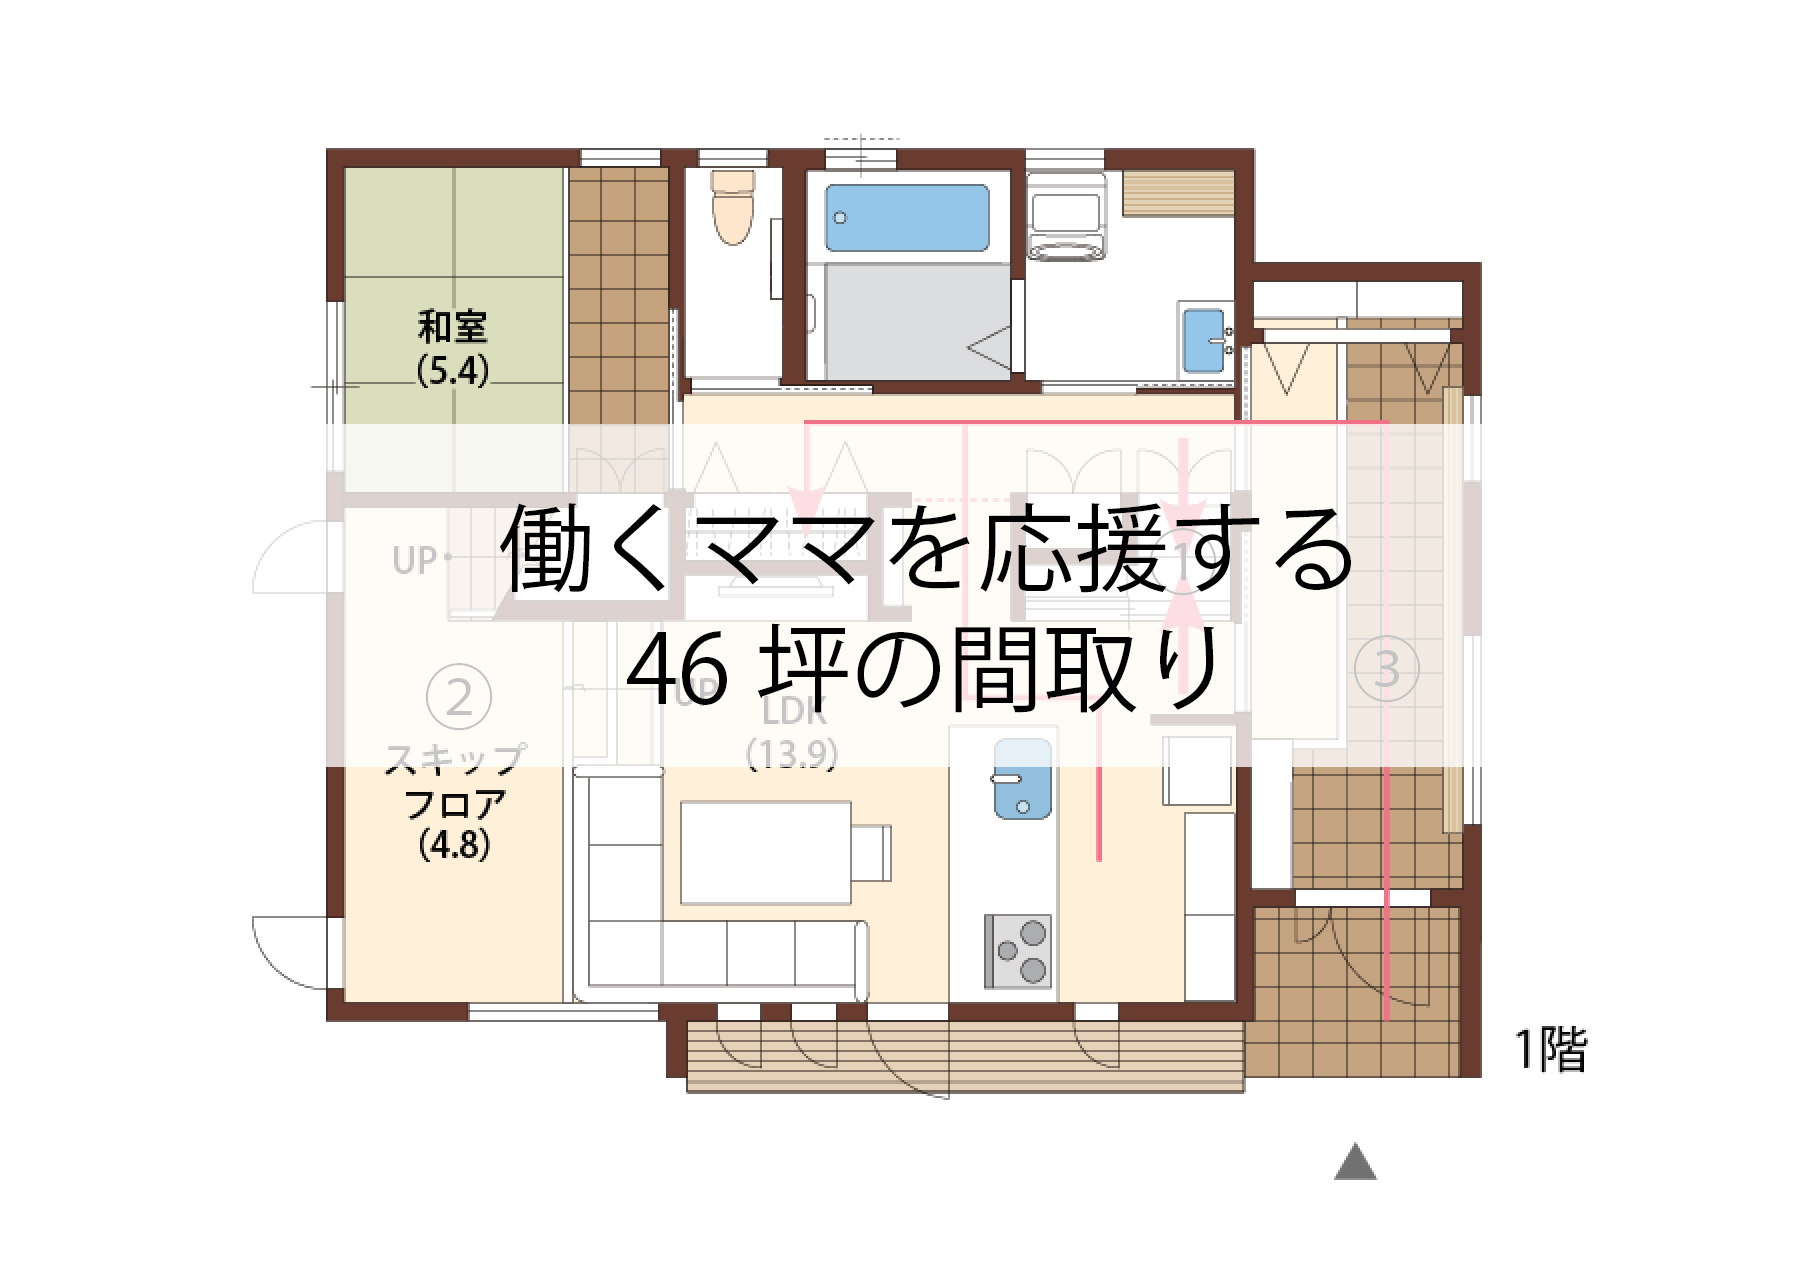 46坪 間取り ママを助ける家事楽の家 兵庫県で二世帯住宅ならアイフルホーム